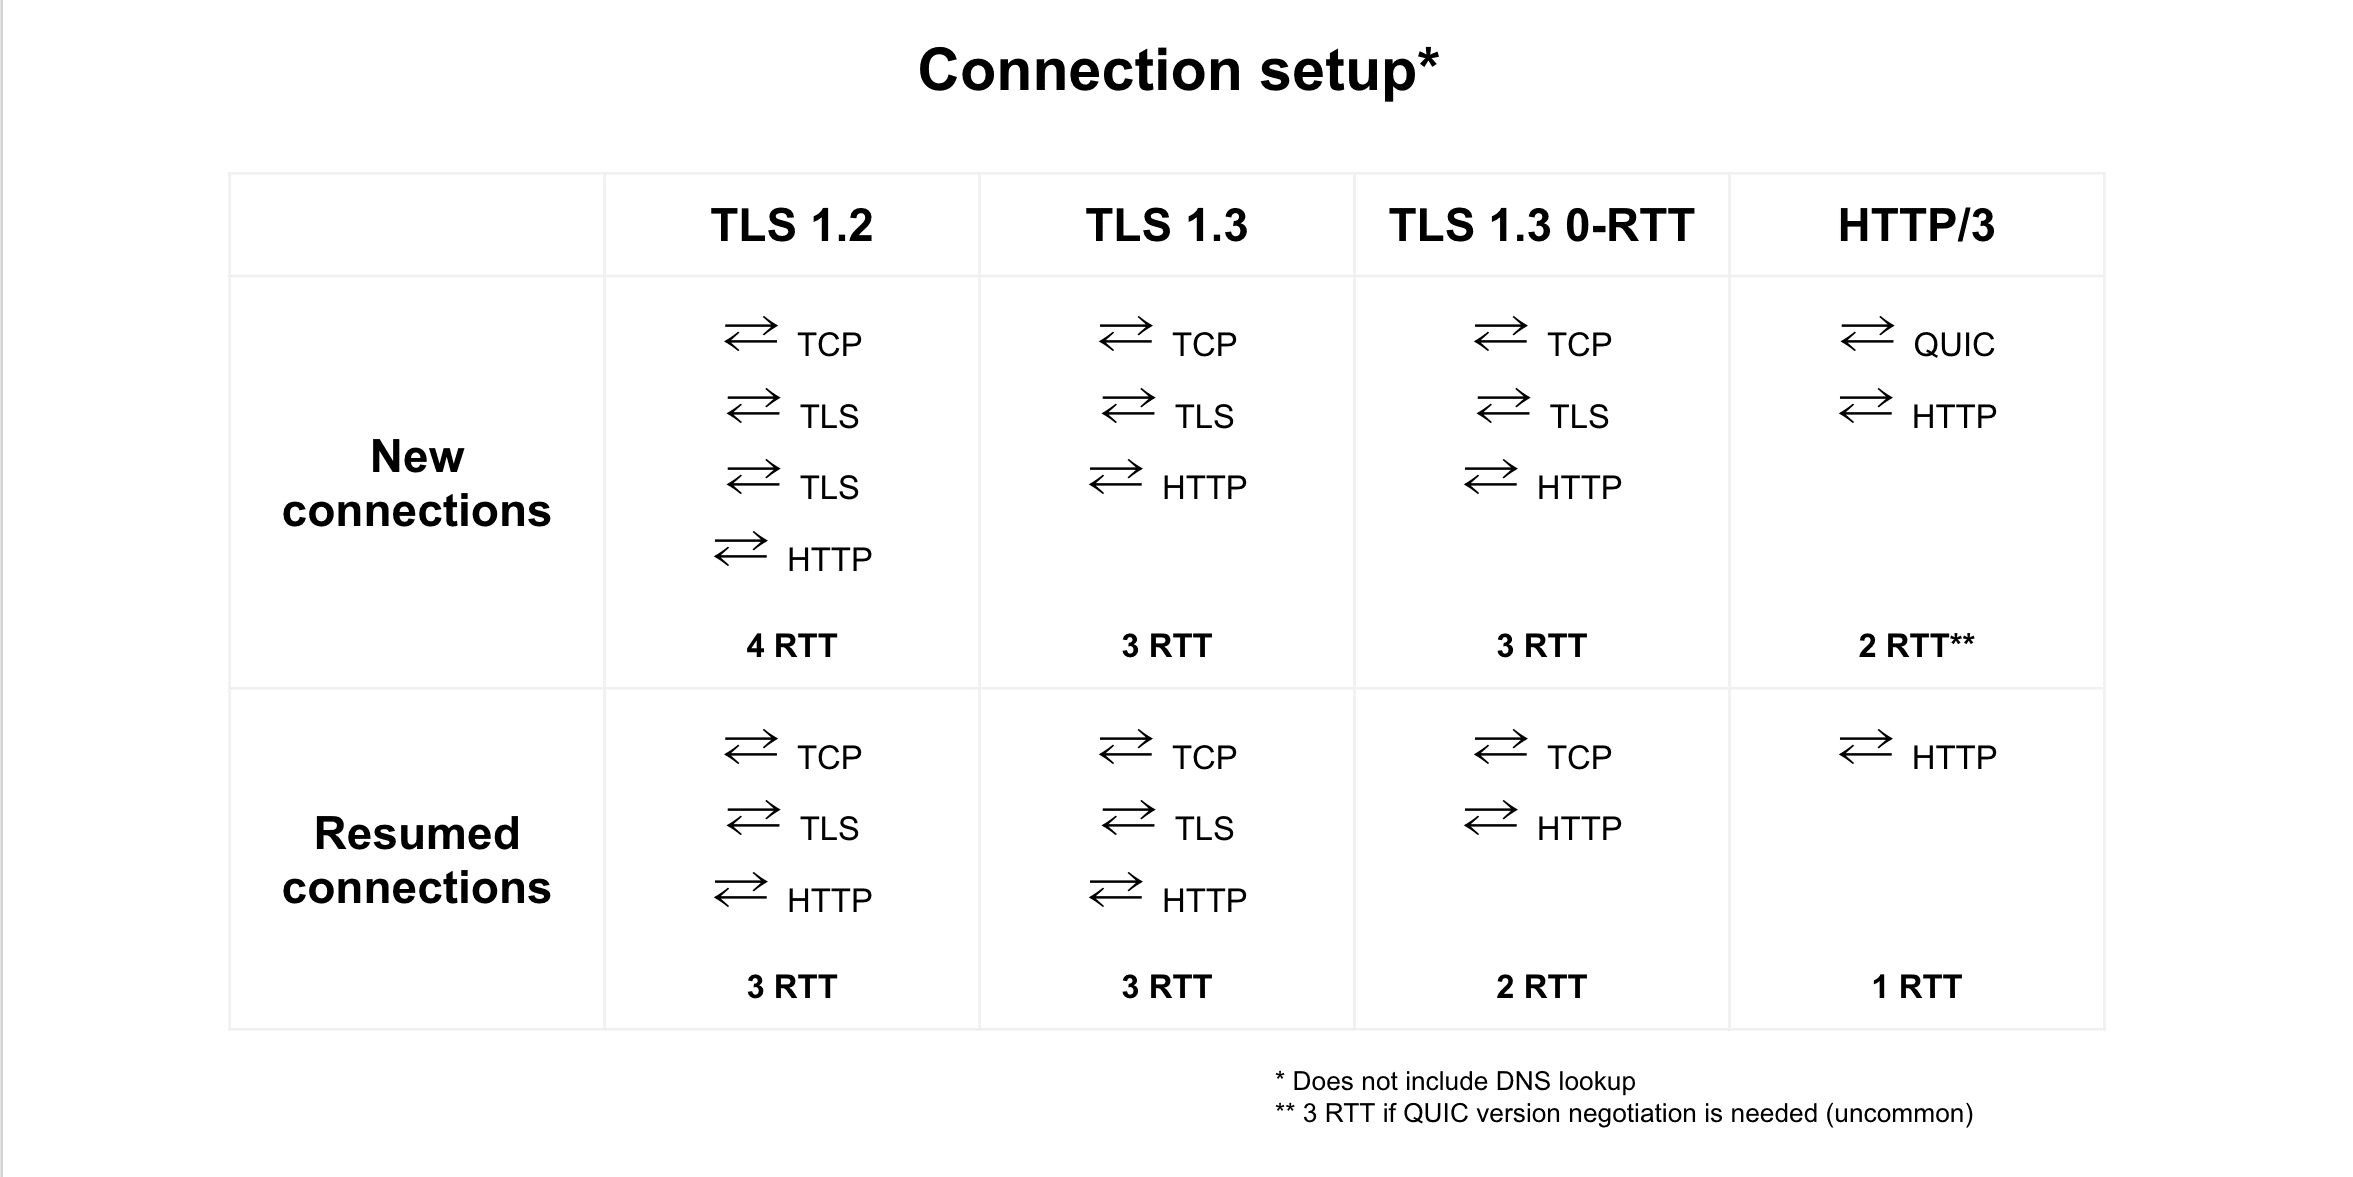 TLS 1.2, TLS 1.3, TLS 1.3 0-RTT, और HTTP/3 के बीच कनेक्शन को फिर से शुरू करने की तुलना